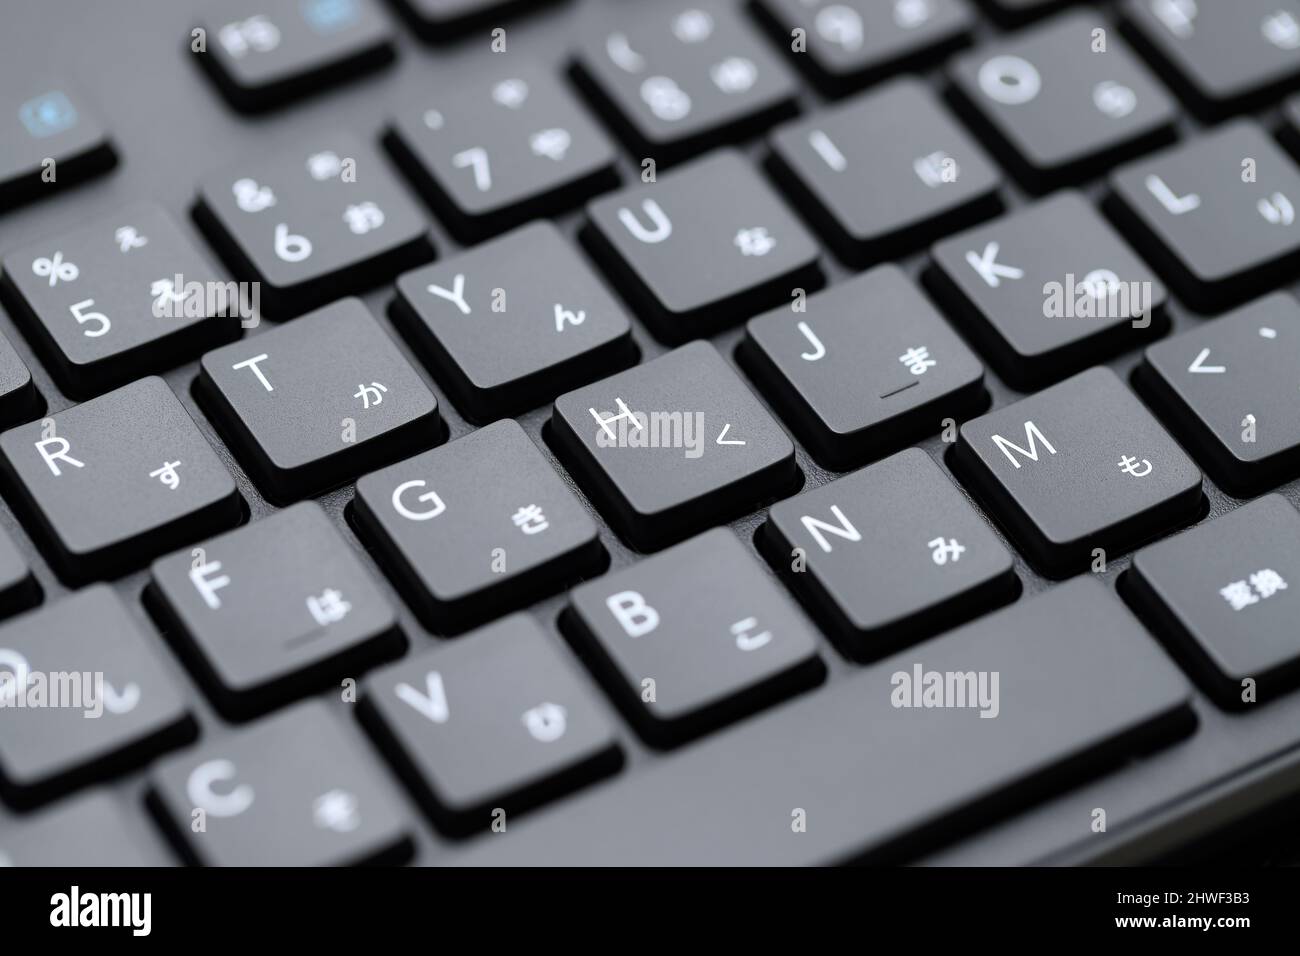 Close up of computer keyboard. Alphabetics and Japanese hiragana typing keyboard. Stock Photo